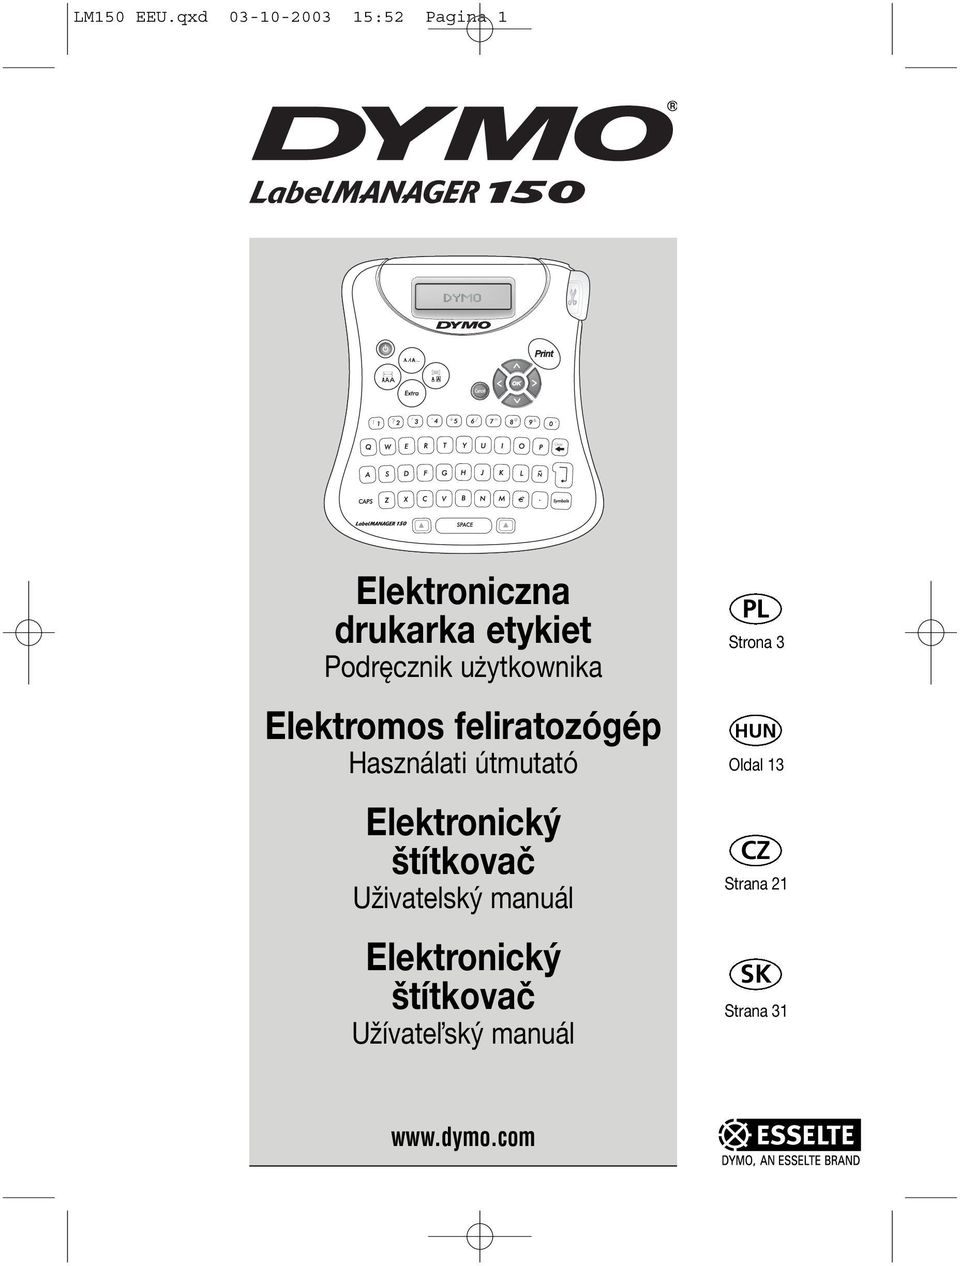 Podręcznik użytkownika Elektromos feliratozógép Használati útmutató